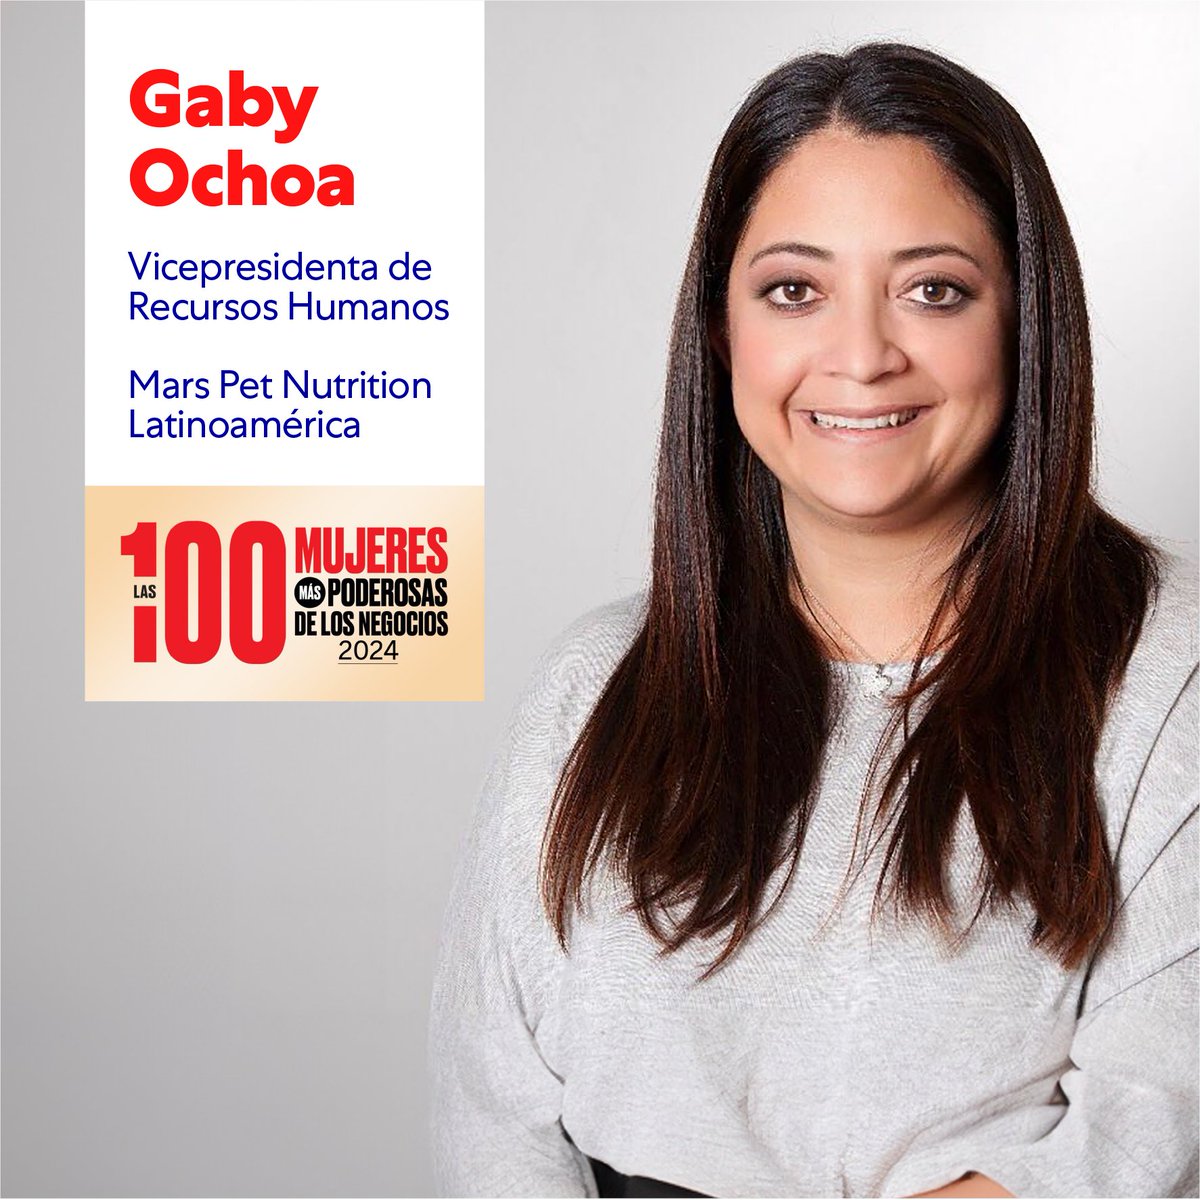 Estamos orgullosos de compartir que por 4to año consecutivo, nuestra Asociada Gaby Ochoa, cabeza de Recursos Humanos para Mars Pet Nutrition Latinoamérica, está en el ranking de '100 mujeres poderosas' por Grupo Expansión. #ElMañanaEmpiezaHoy #MarsMexico #OrgullosamenteMars